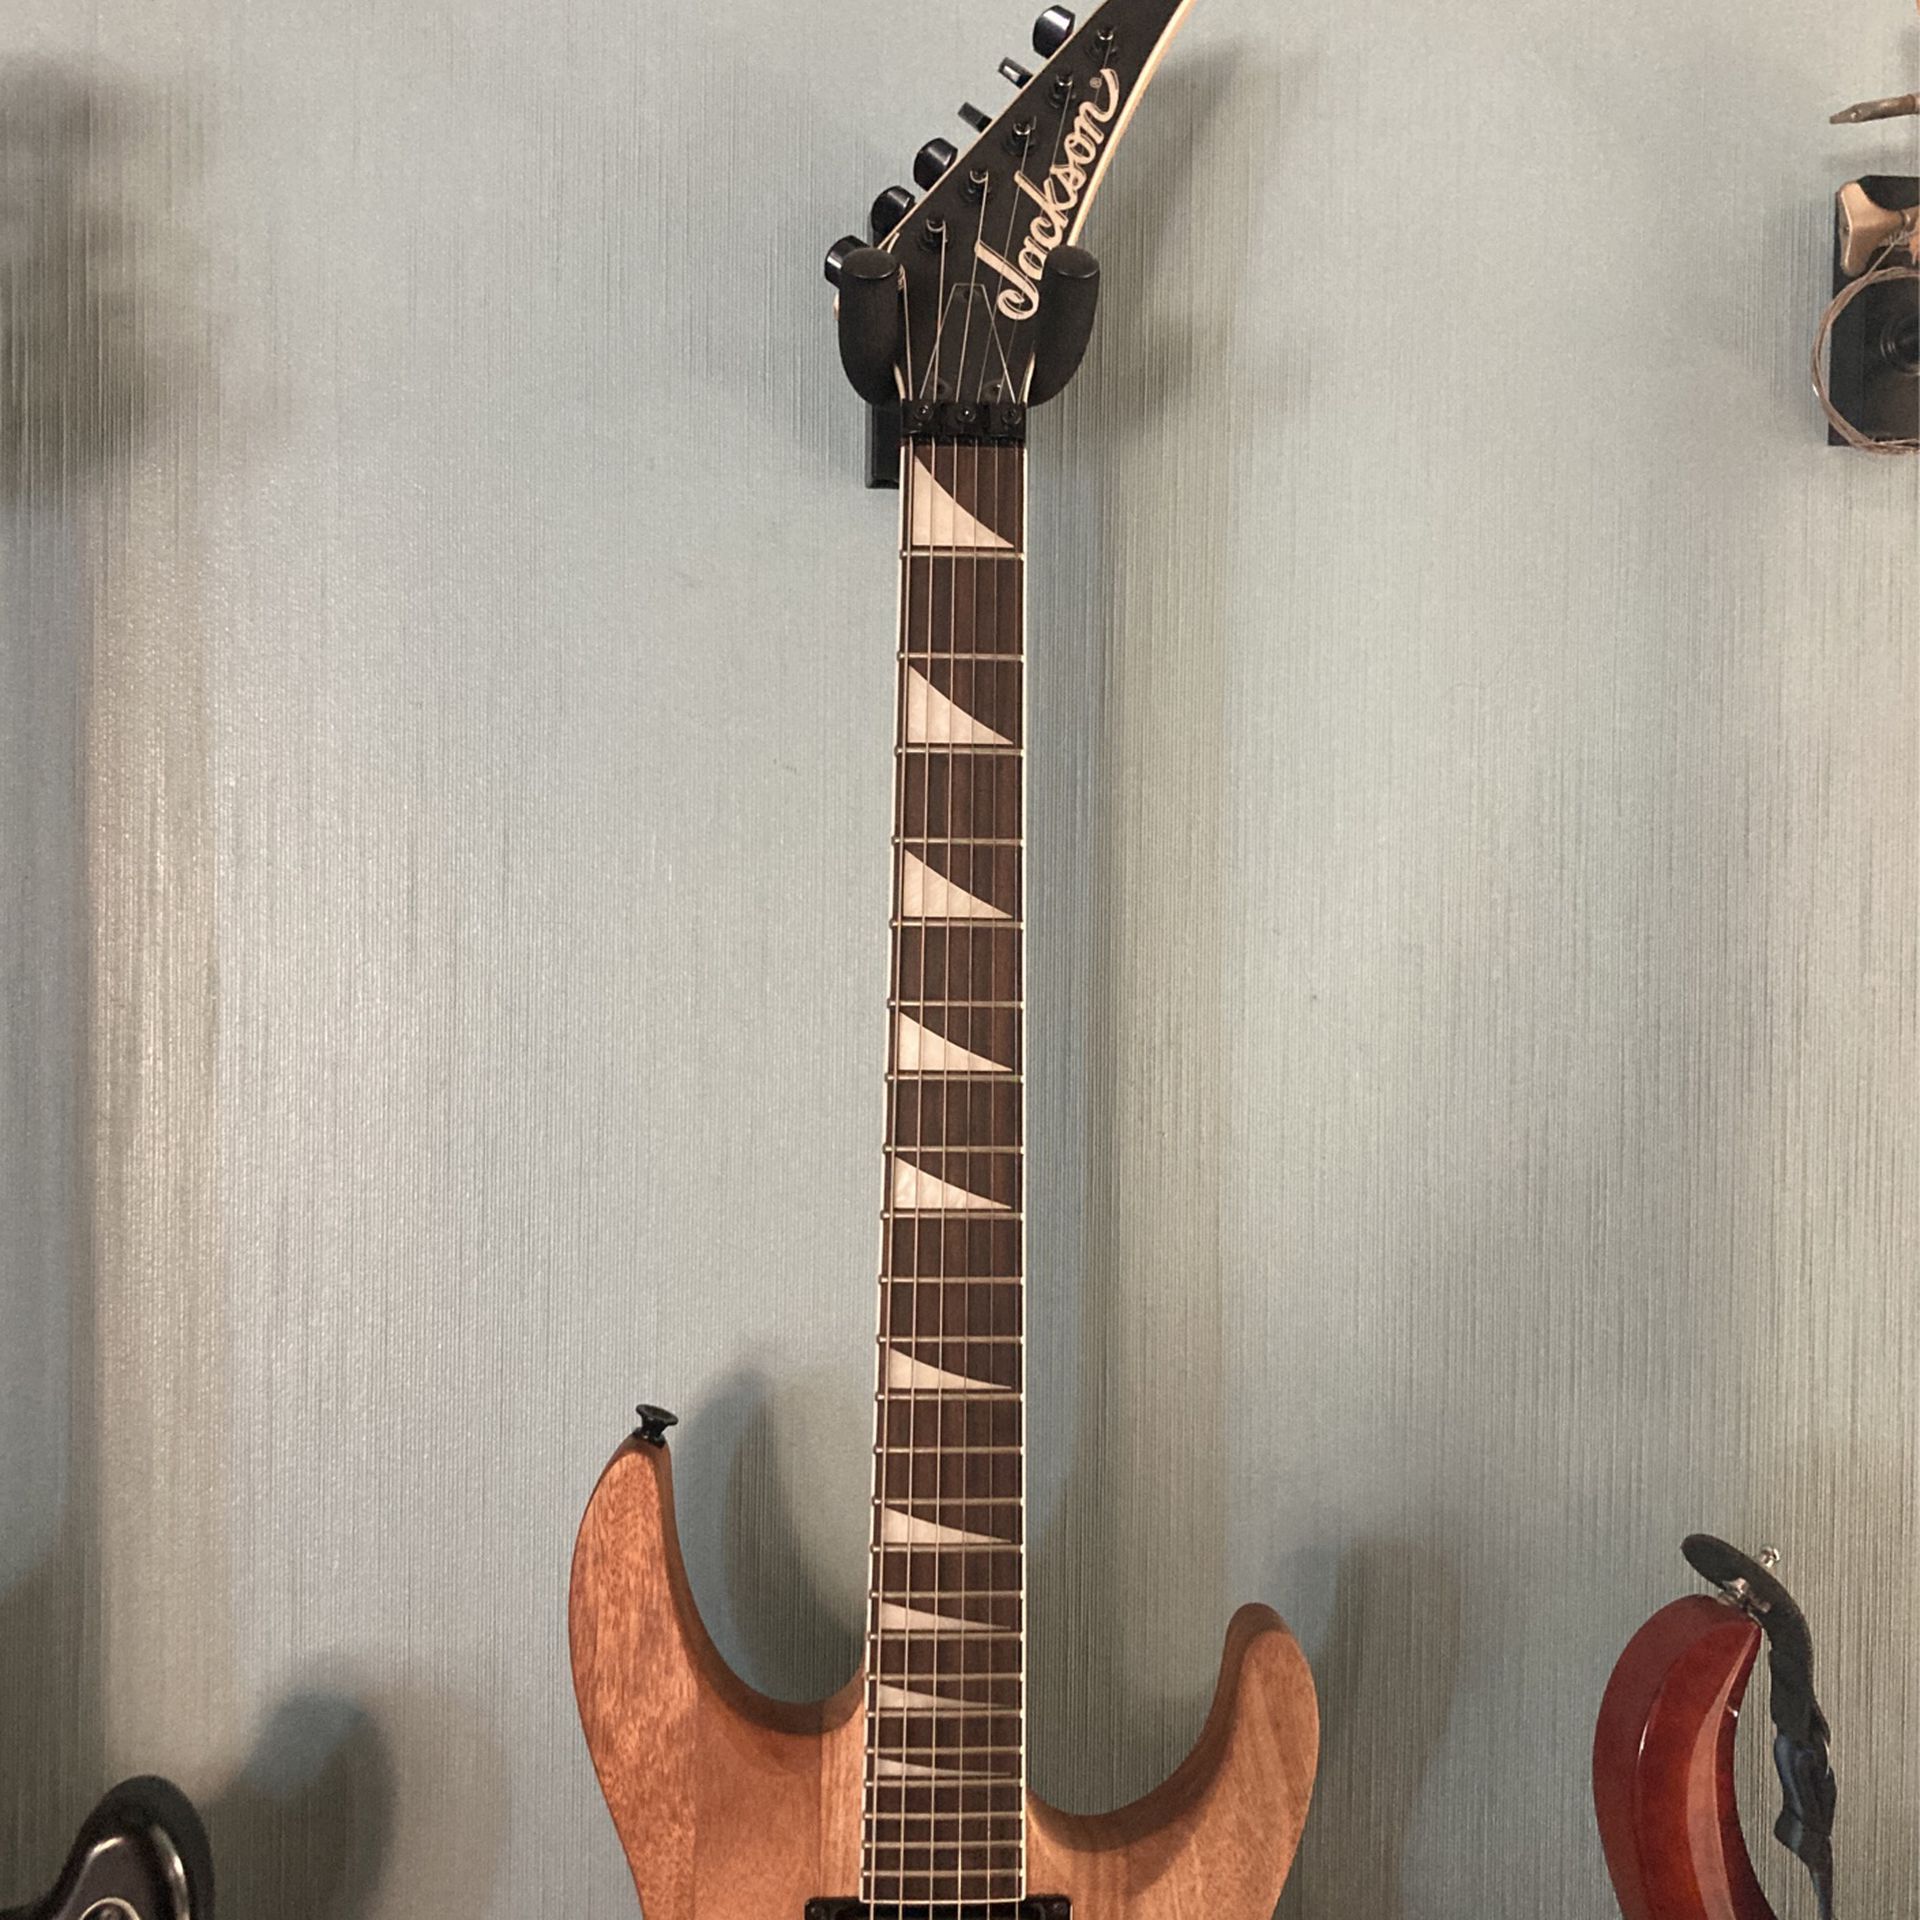 Rejsebureau Pointer klistermærke Jackson Guitar for Sale in Riverside, CA - OfferUp